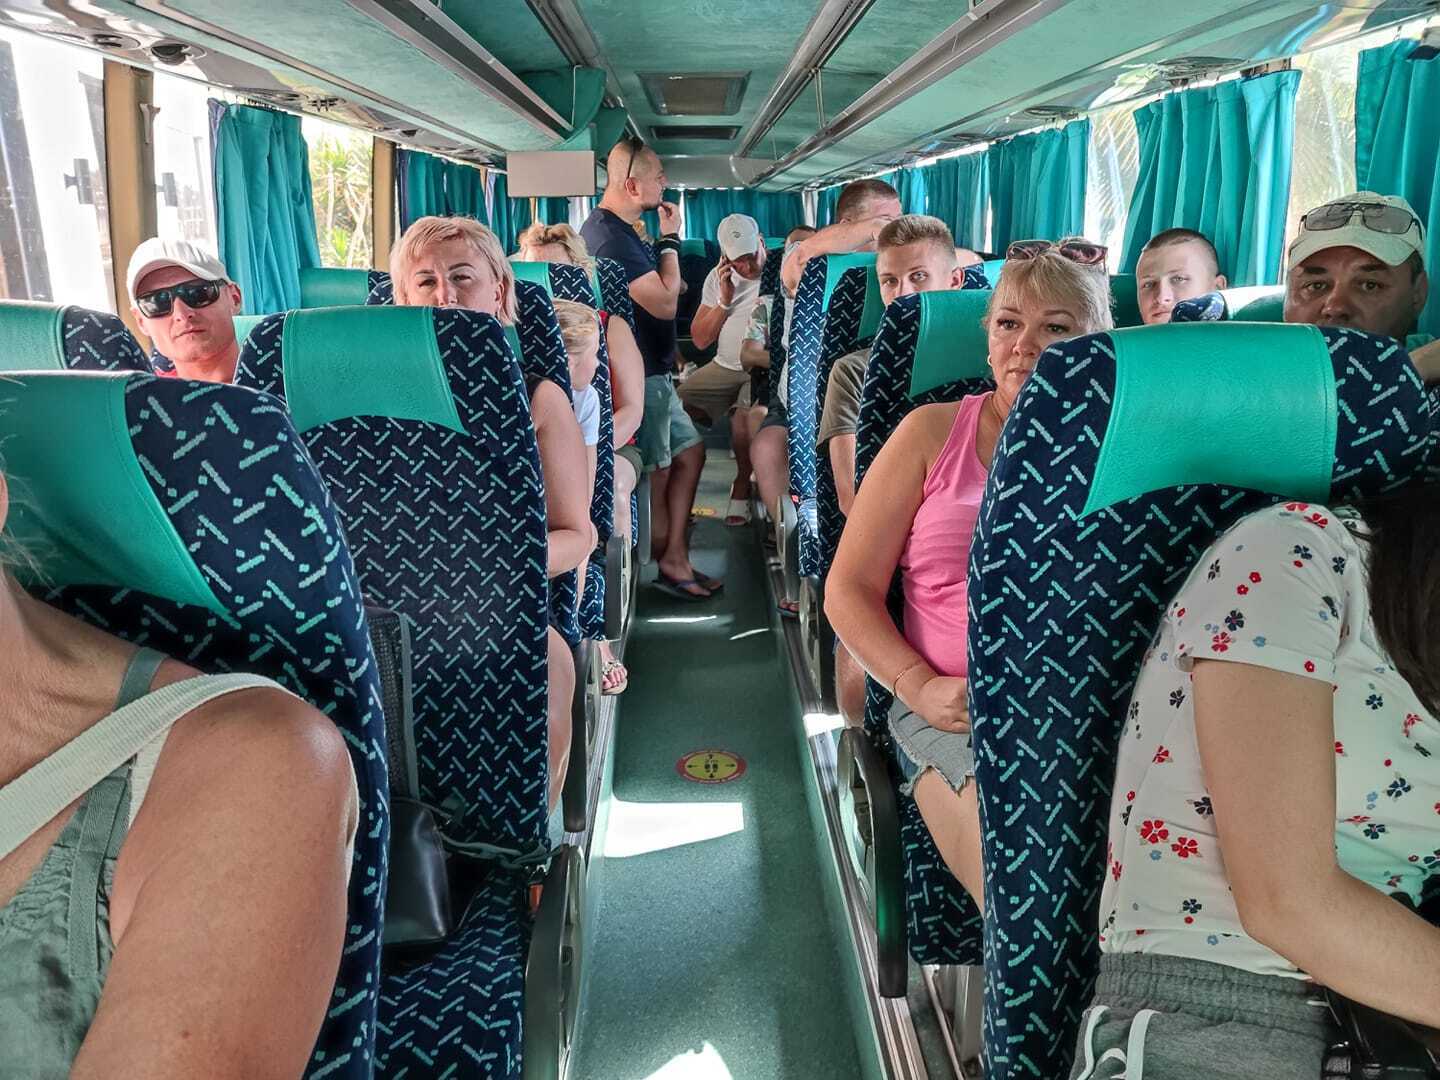 Людей грузили в автобус, чтобы перевезти в другую гостиницу, несмотря на возможную инфекцию